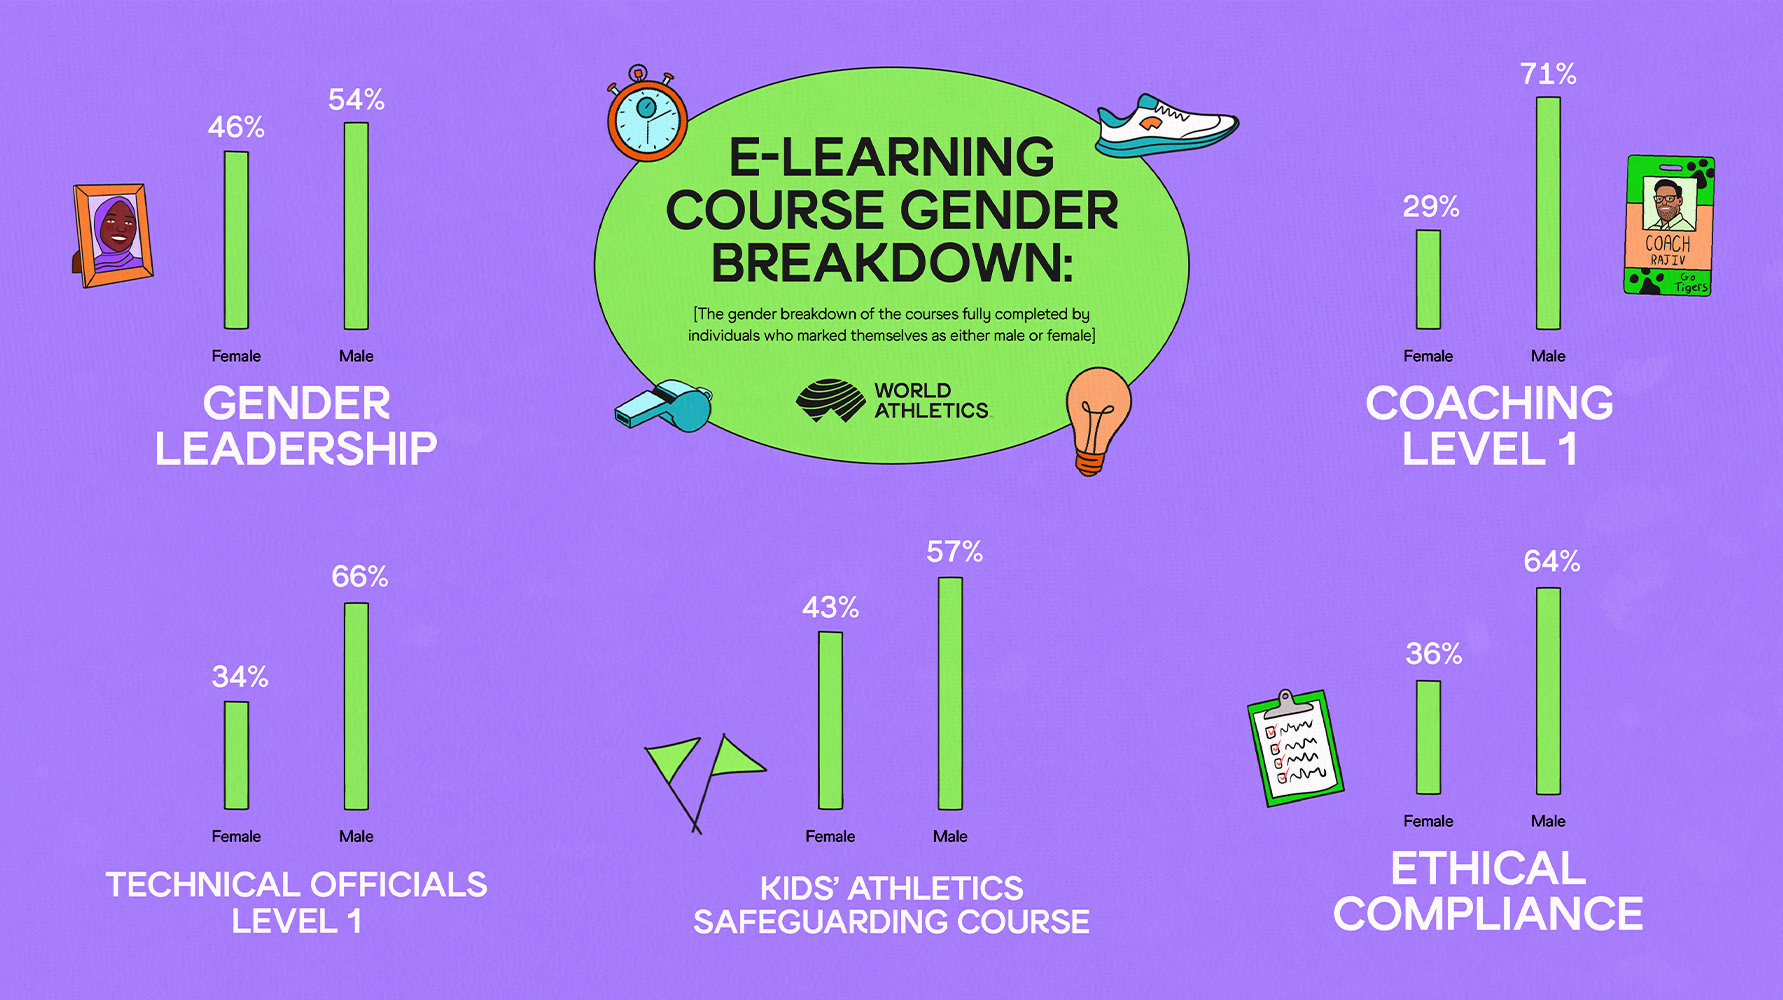 eLearning course gender breakdown